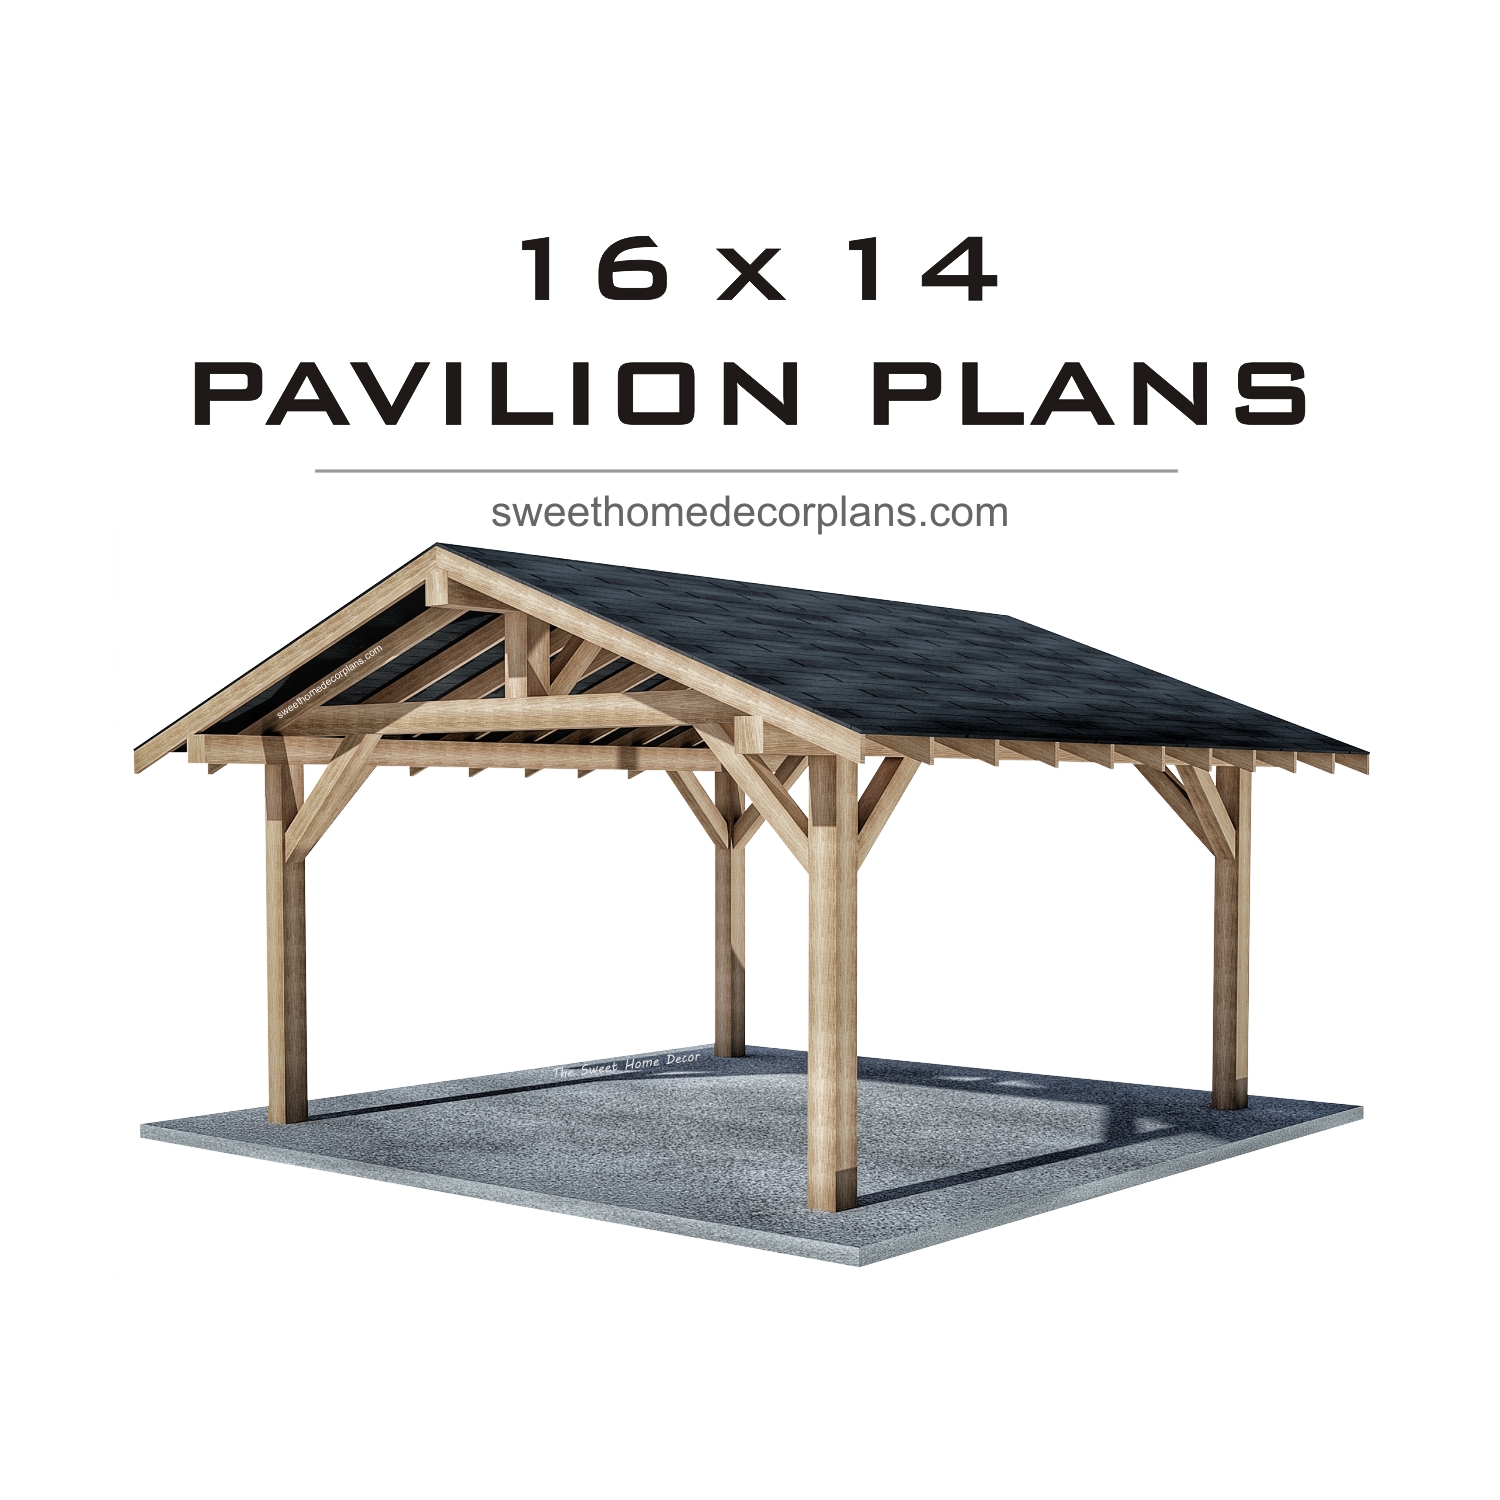 Diy-wooden-16-х-14-gable-pavilion-plans-carport-gazebo